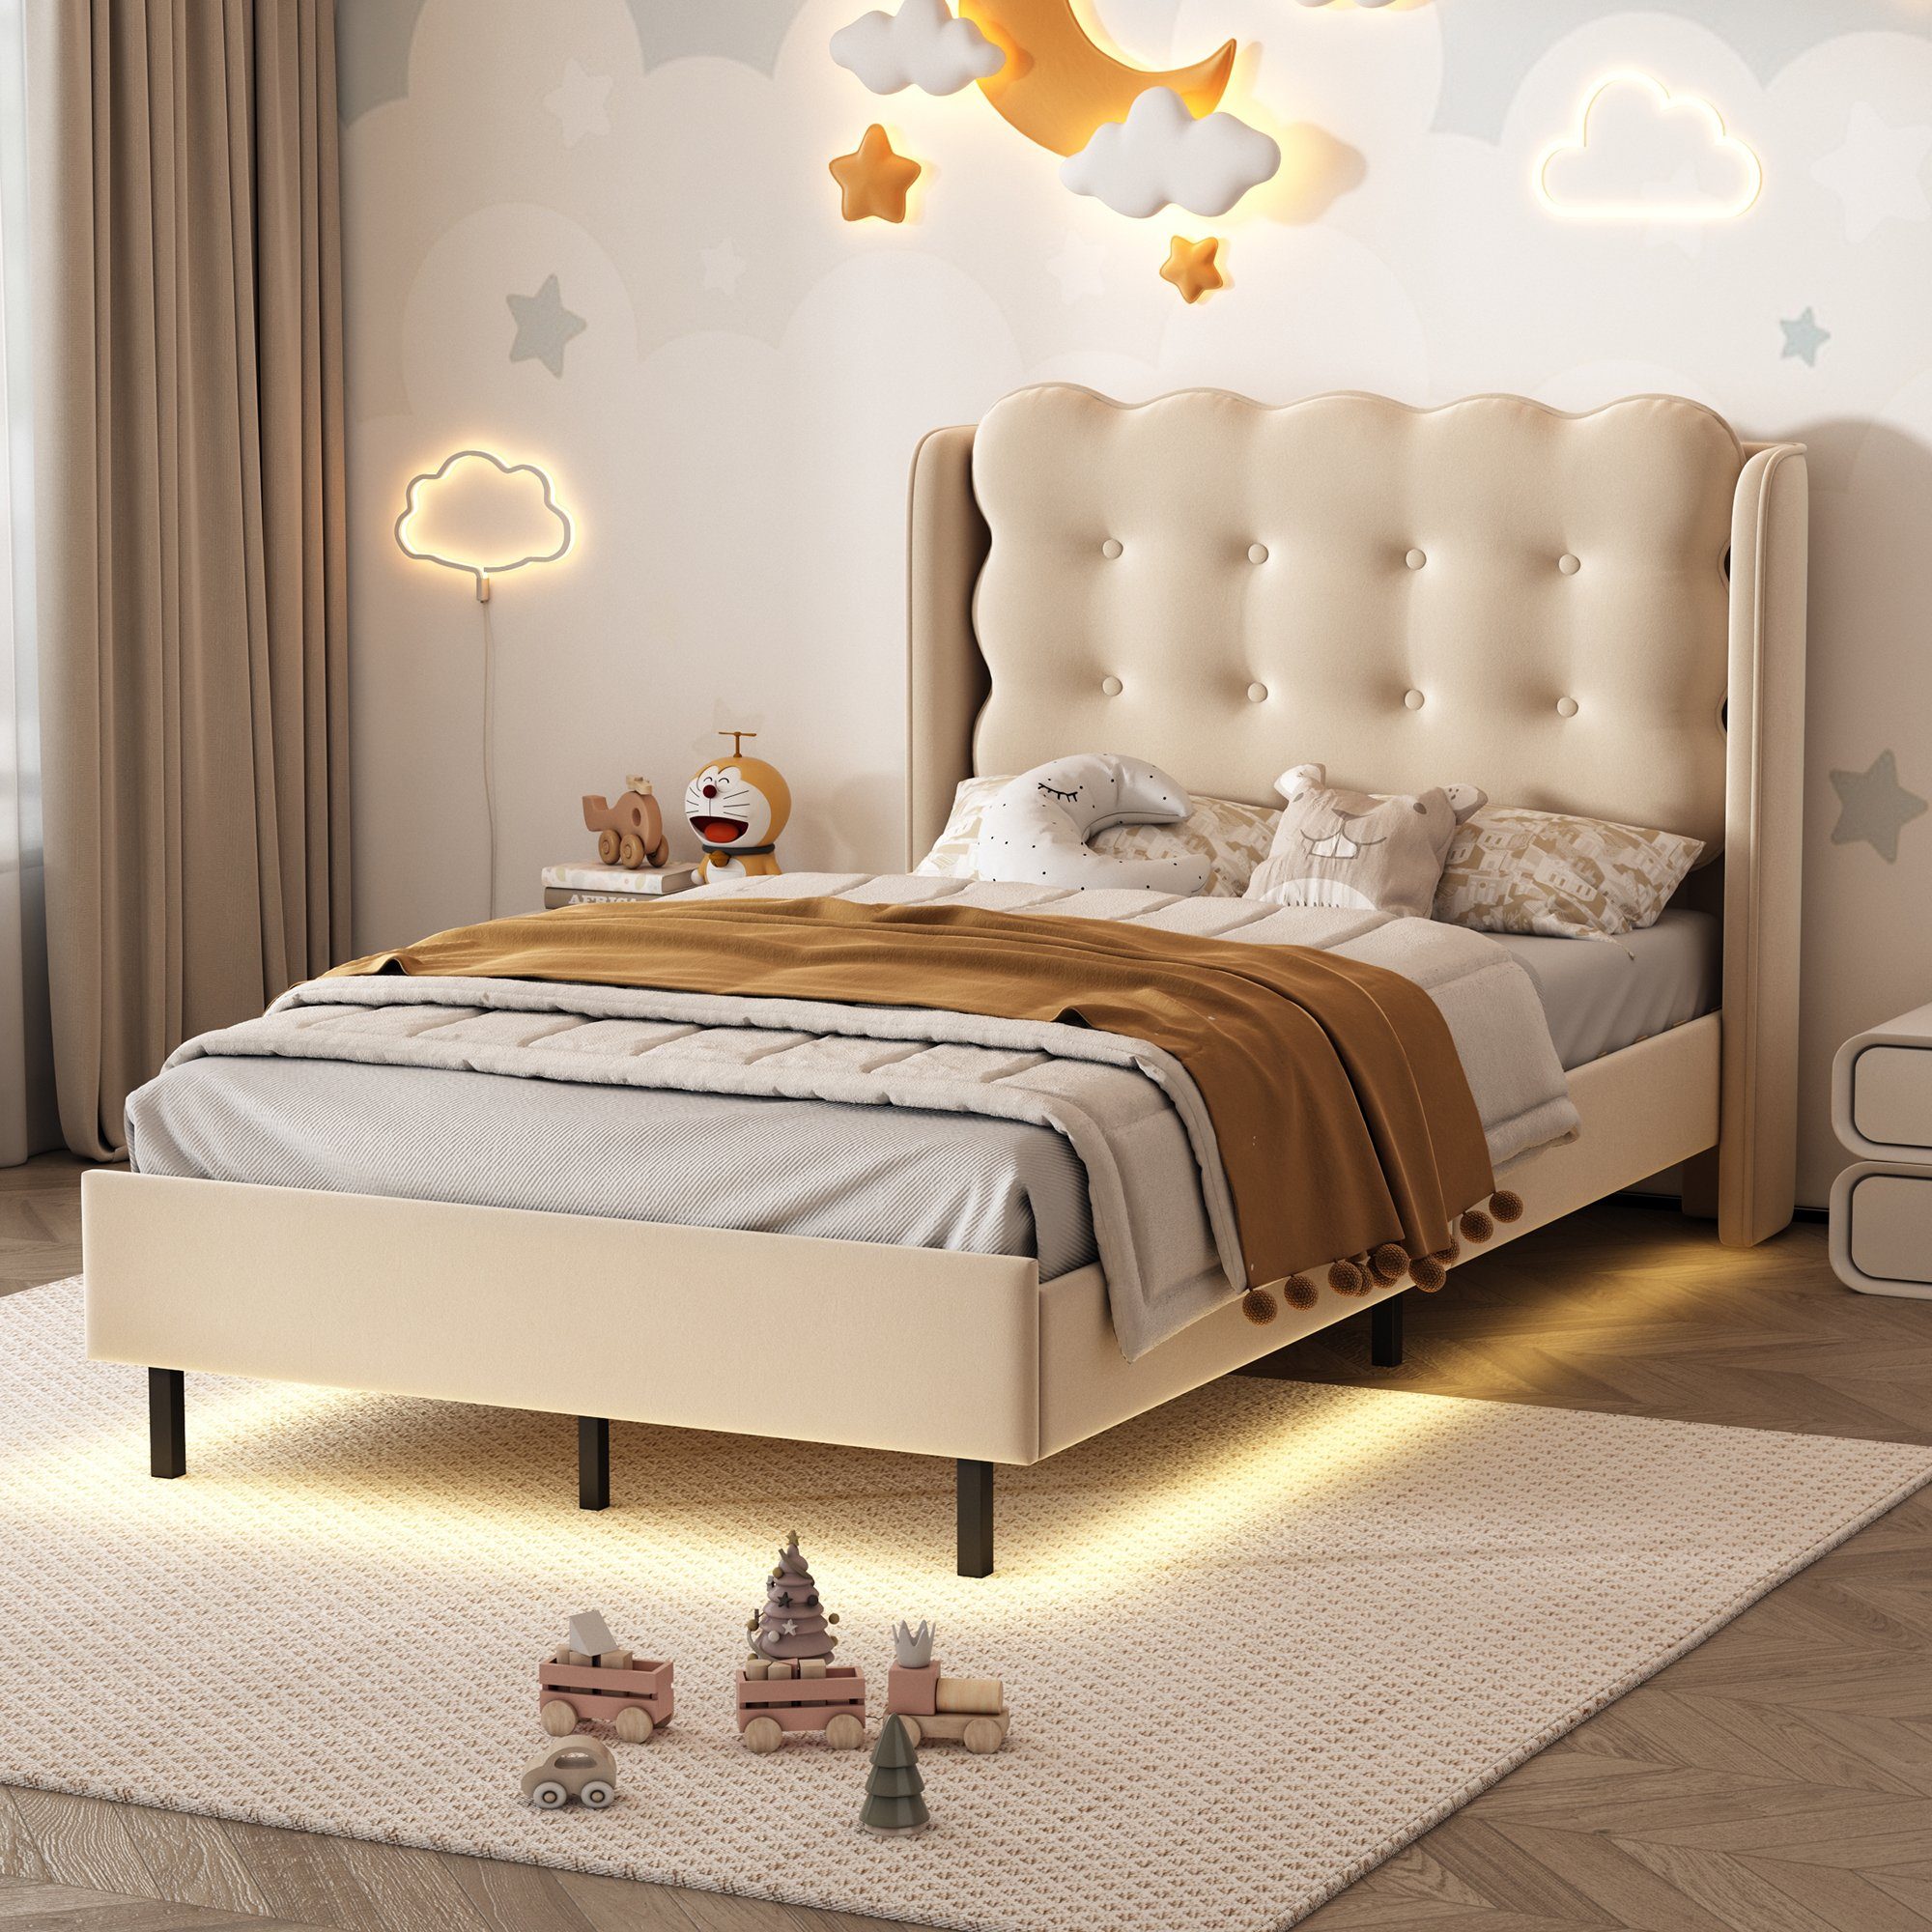 Flieks Polsterbett, Kinderbett Einzelbett mit warmgelben Lichtstreifen 90x200cm Samt